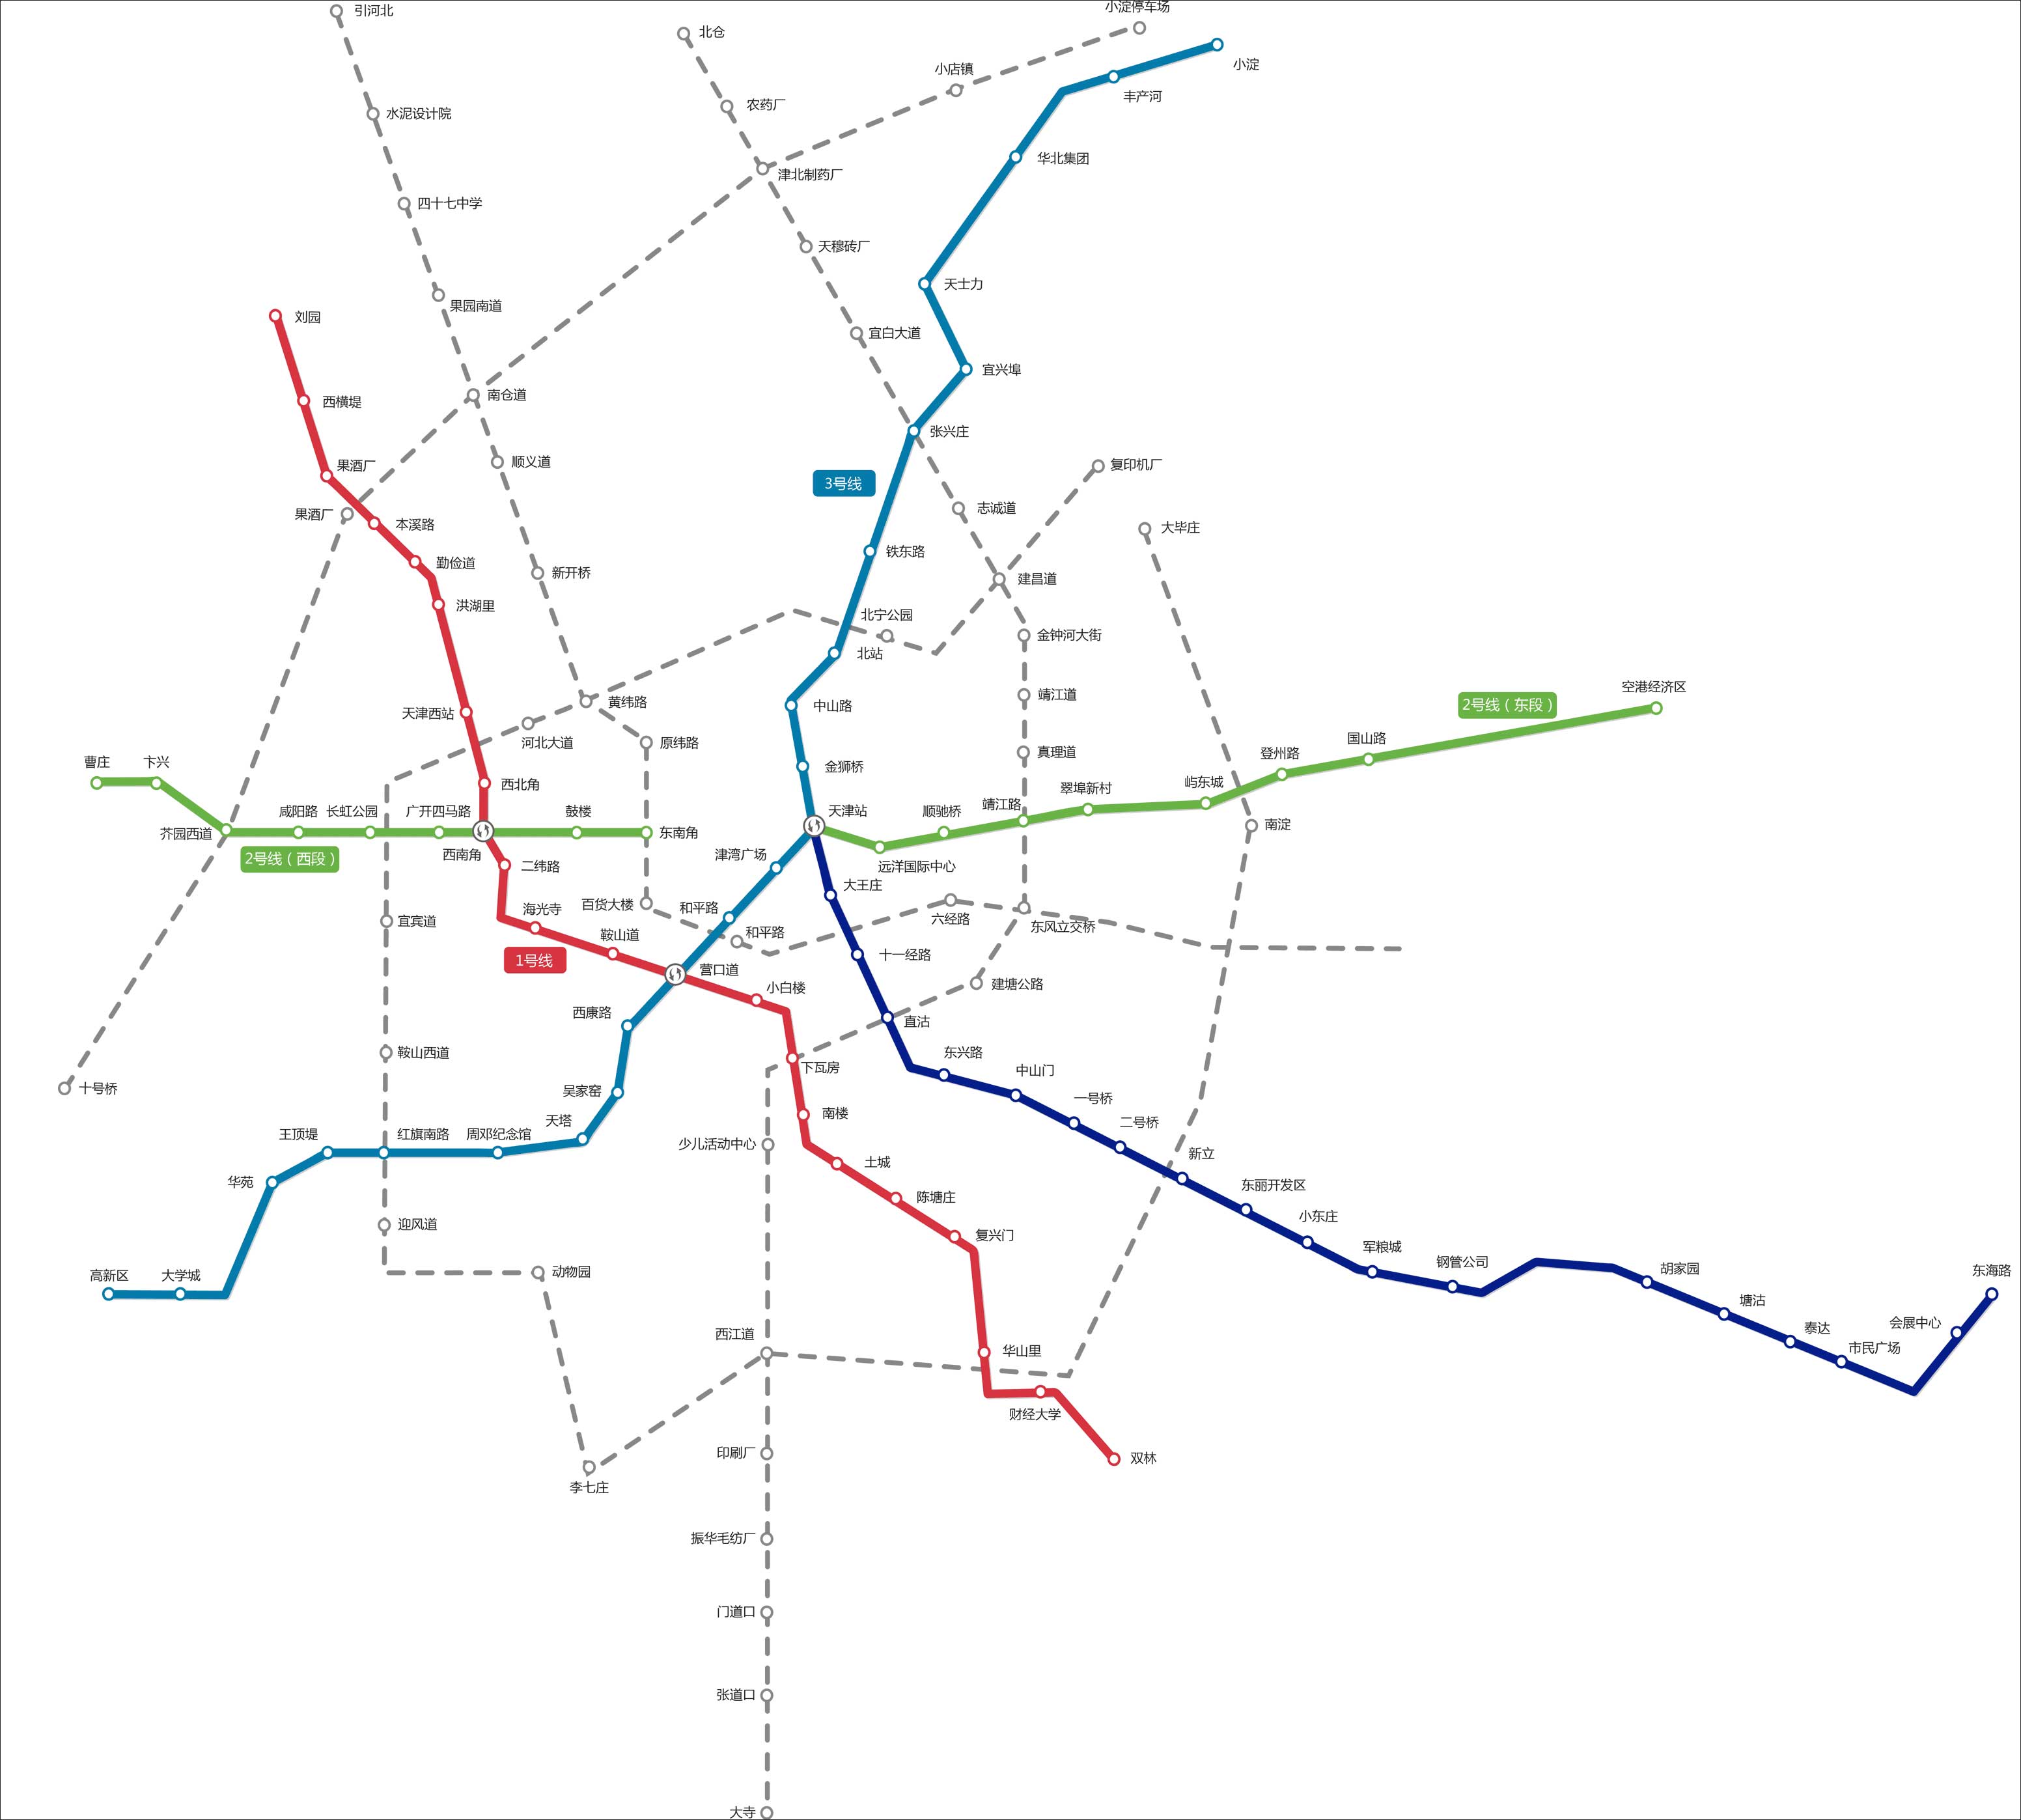 天津地铁线路图(高清)_交通地图库_地图窝图片